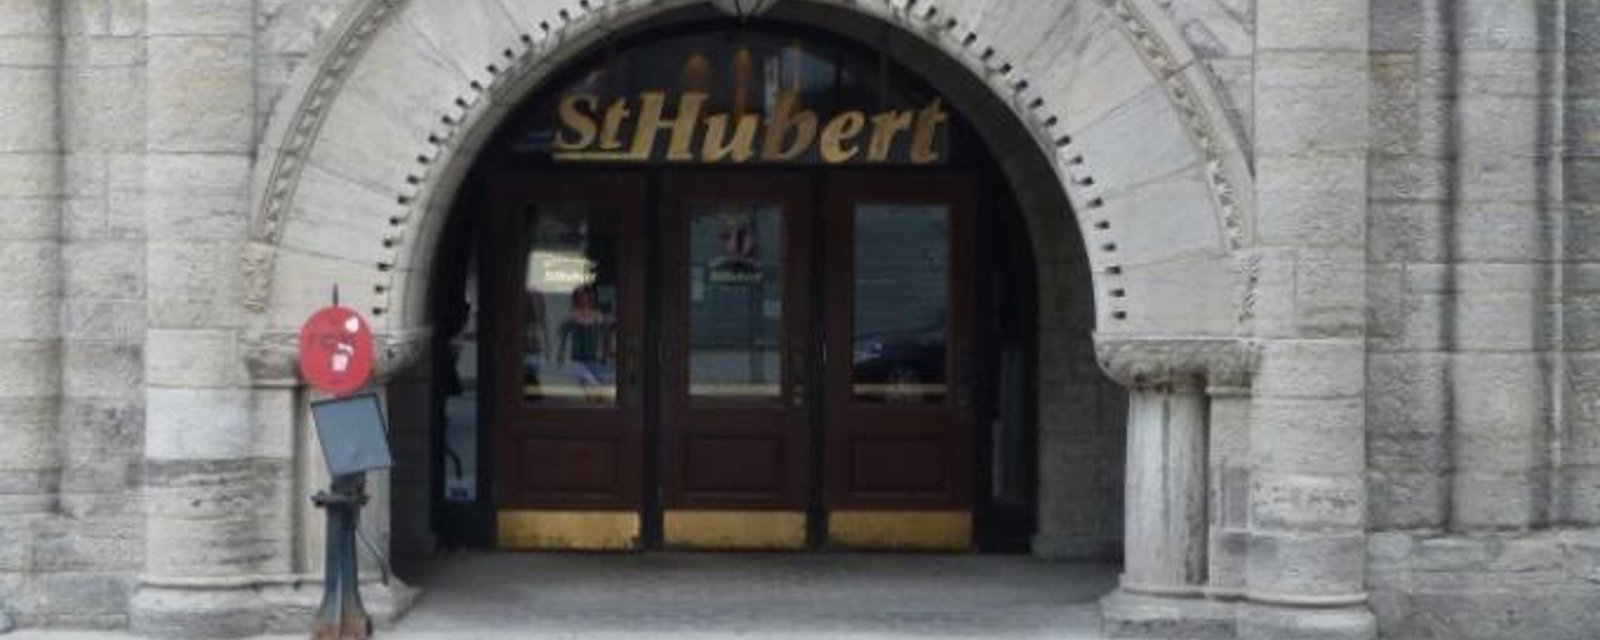 Après 20 ans, le fameux St-Hubert de la gare Windsor ferme ses portes!